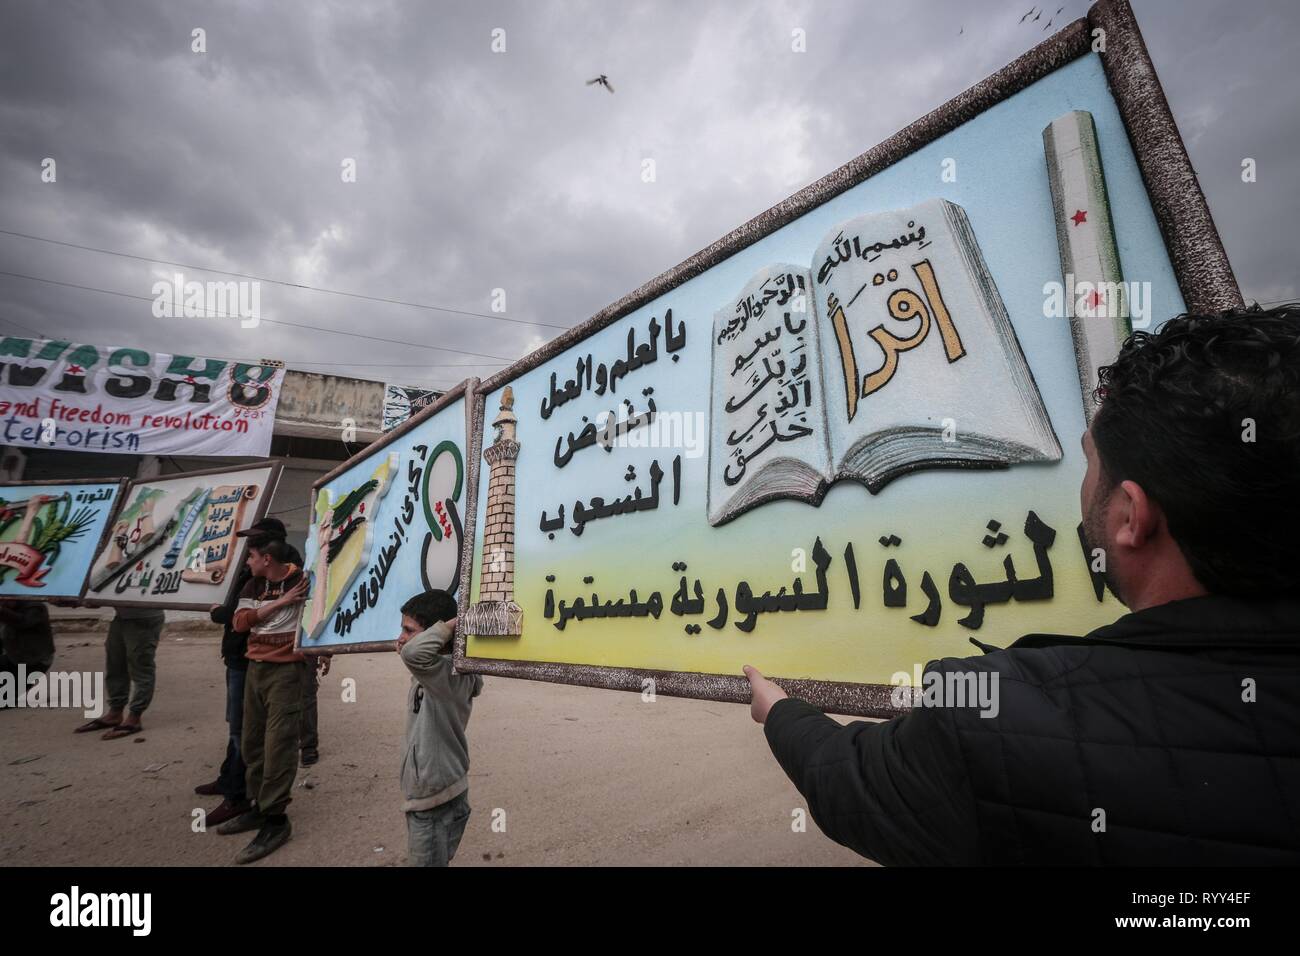 Siri sono visti i banner di contenimento durante la celebrazione. Siri nella città di Bensh, che si trova a est di Idlib e controllati dall'opposizione, celebrato l'ottavo anniversario della rivolta contro il regime del Presidente Bashar al-Assad. Foto Stock